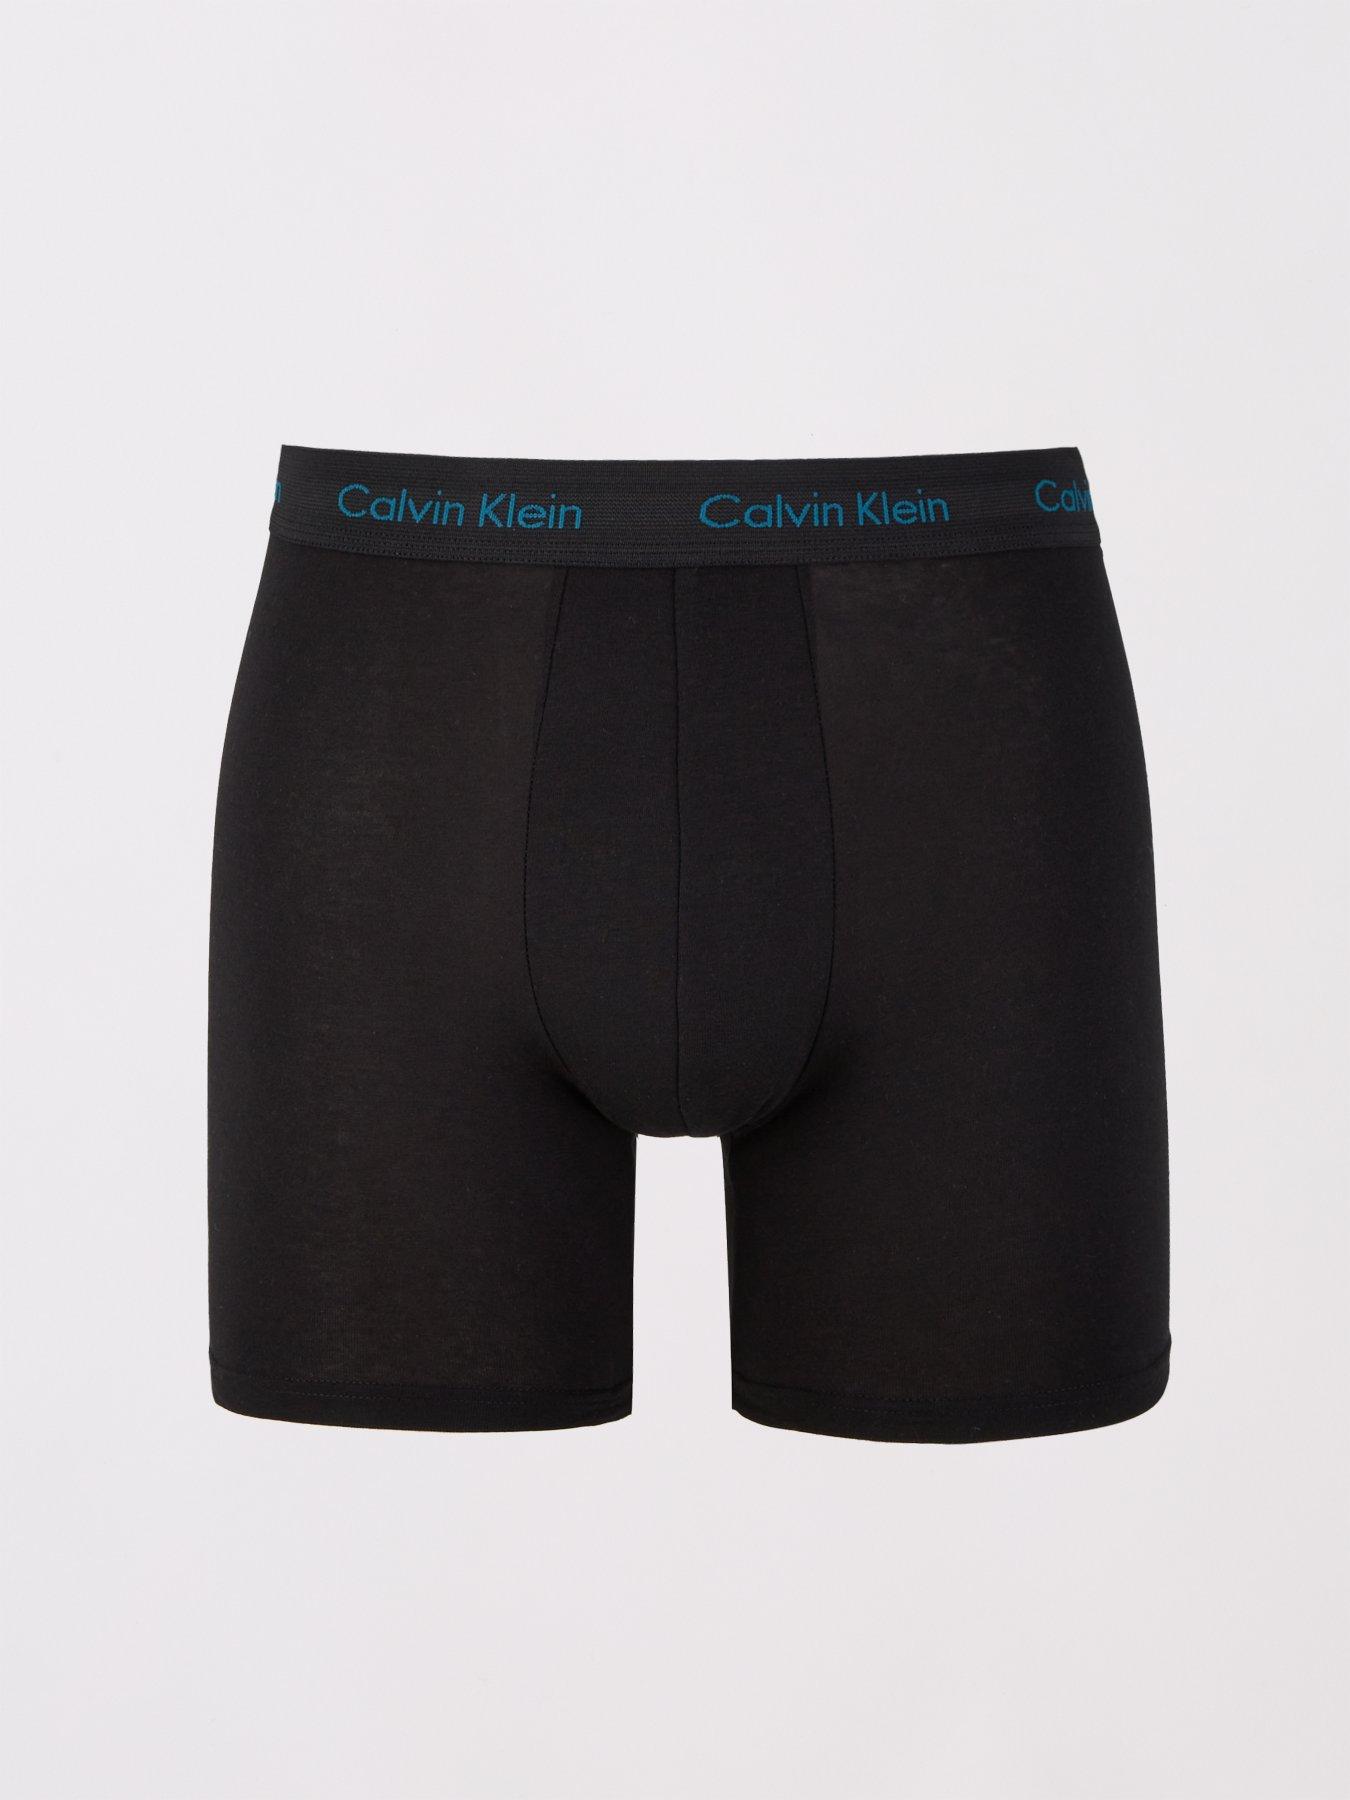 Calvin Klein Modern Cotton Stretch Plus Boxer Briefs (3 Pack